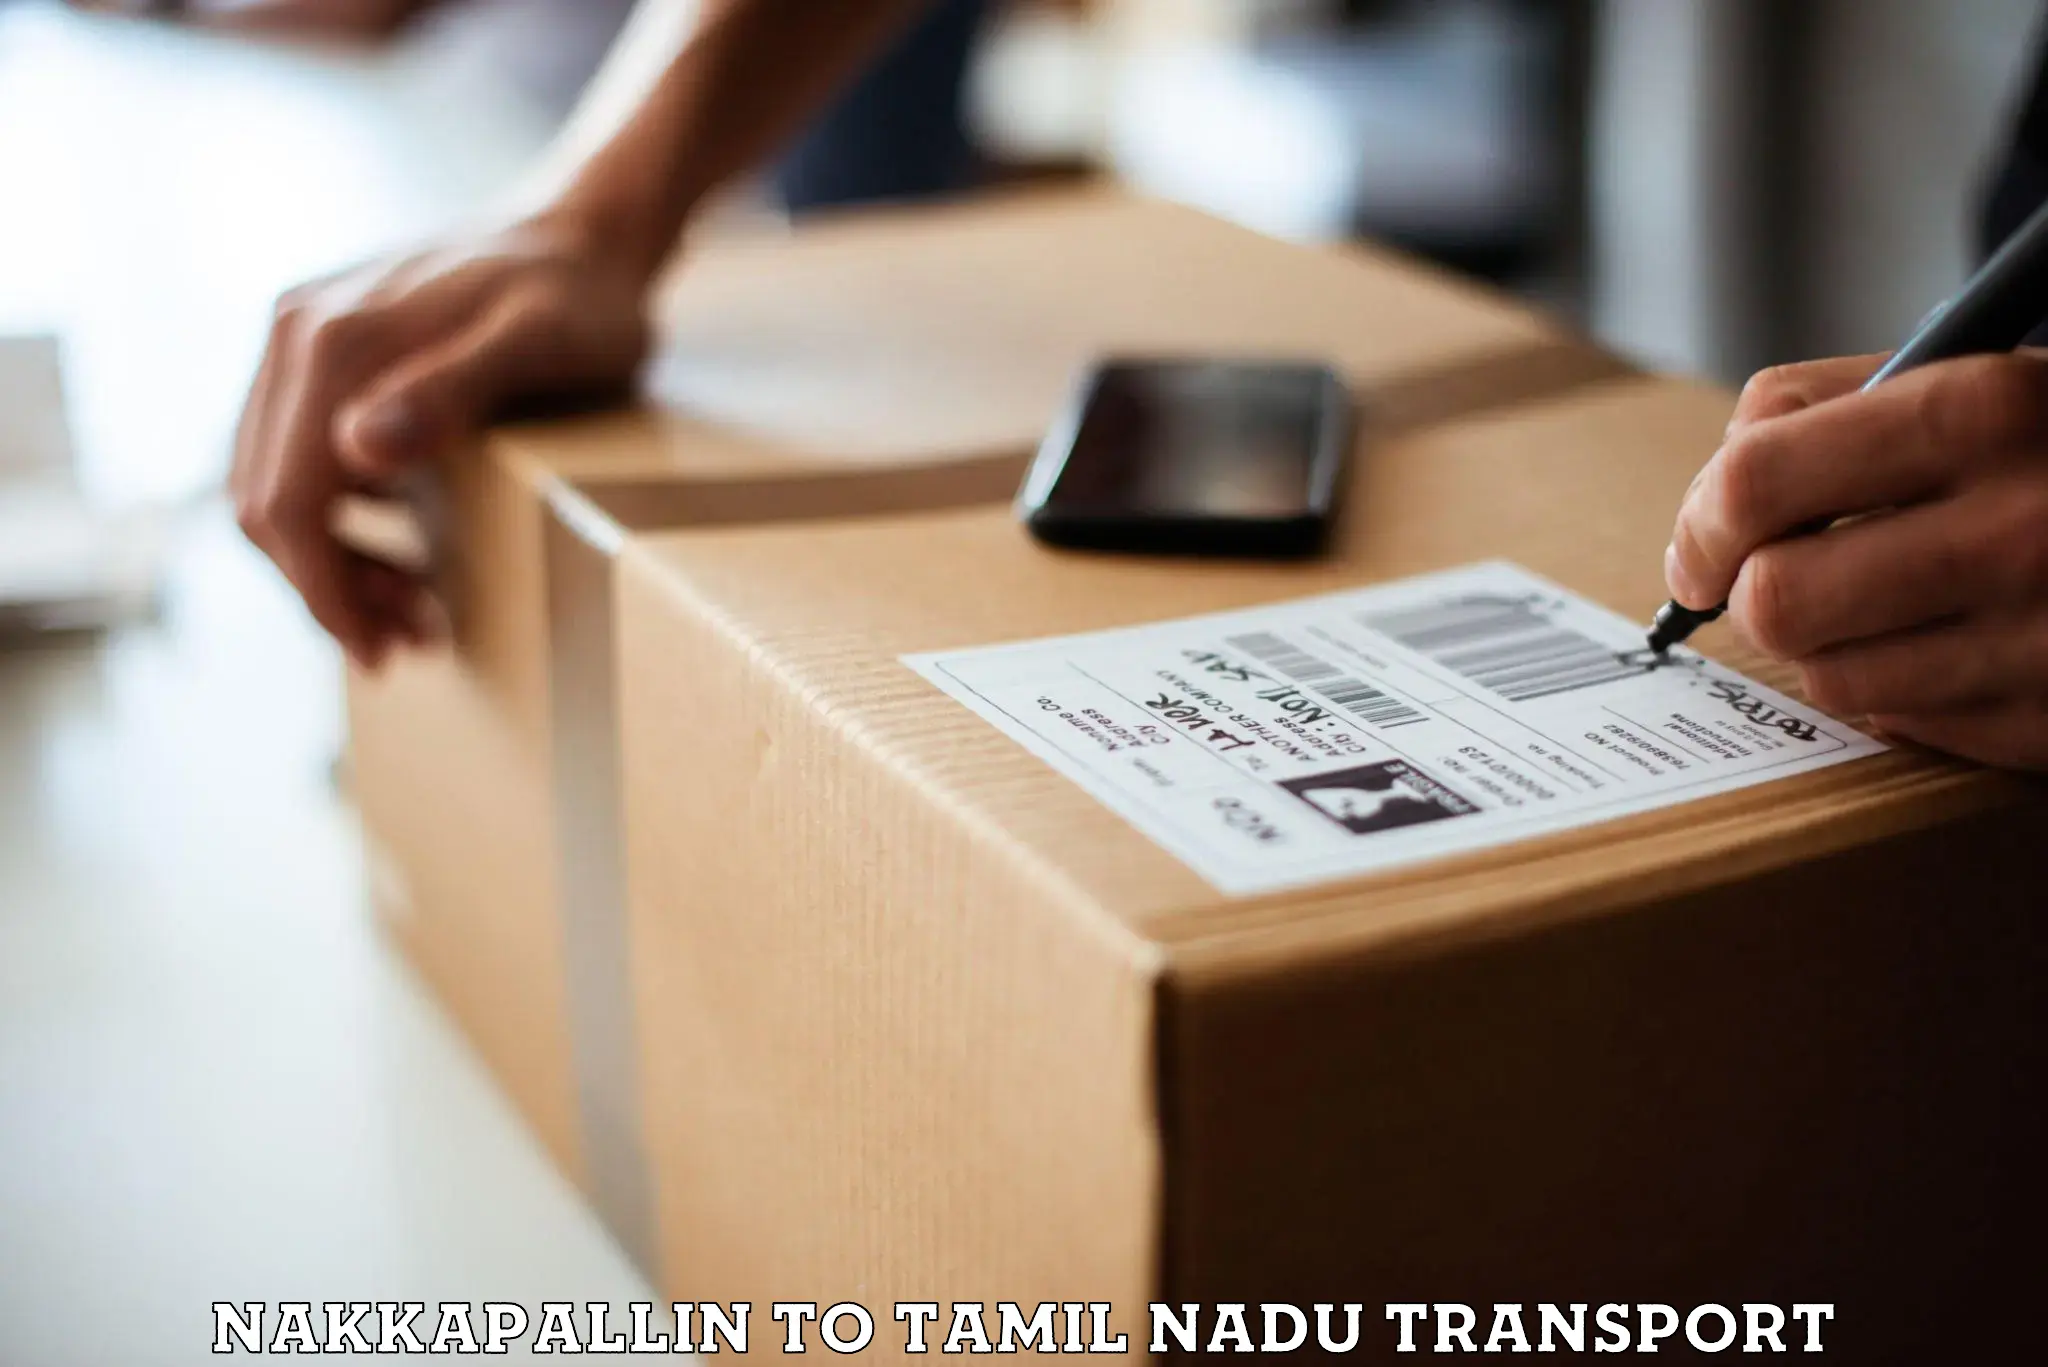 Transport services Nakkapallin to Chinnasalem